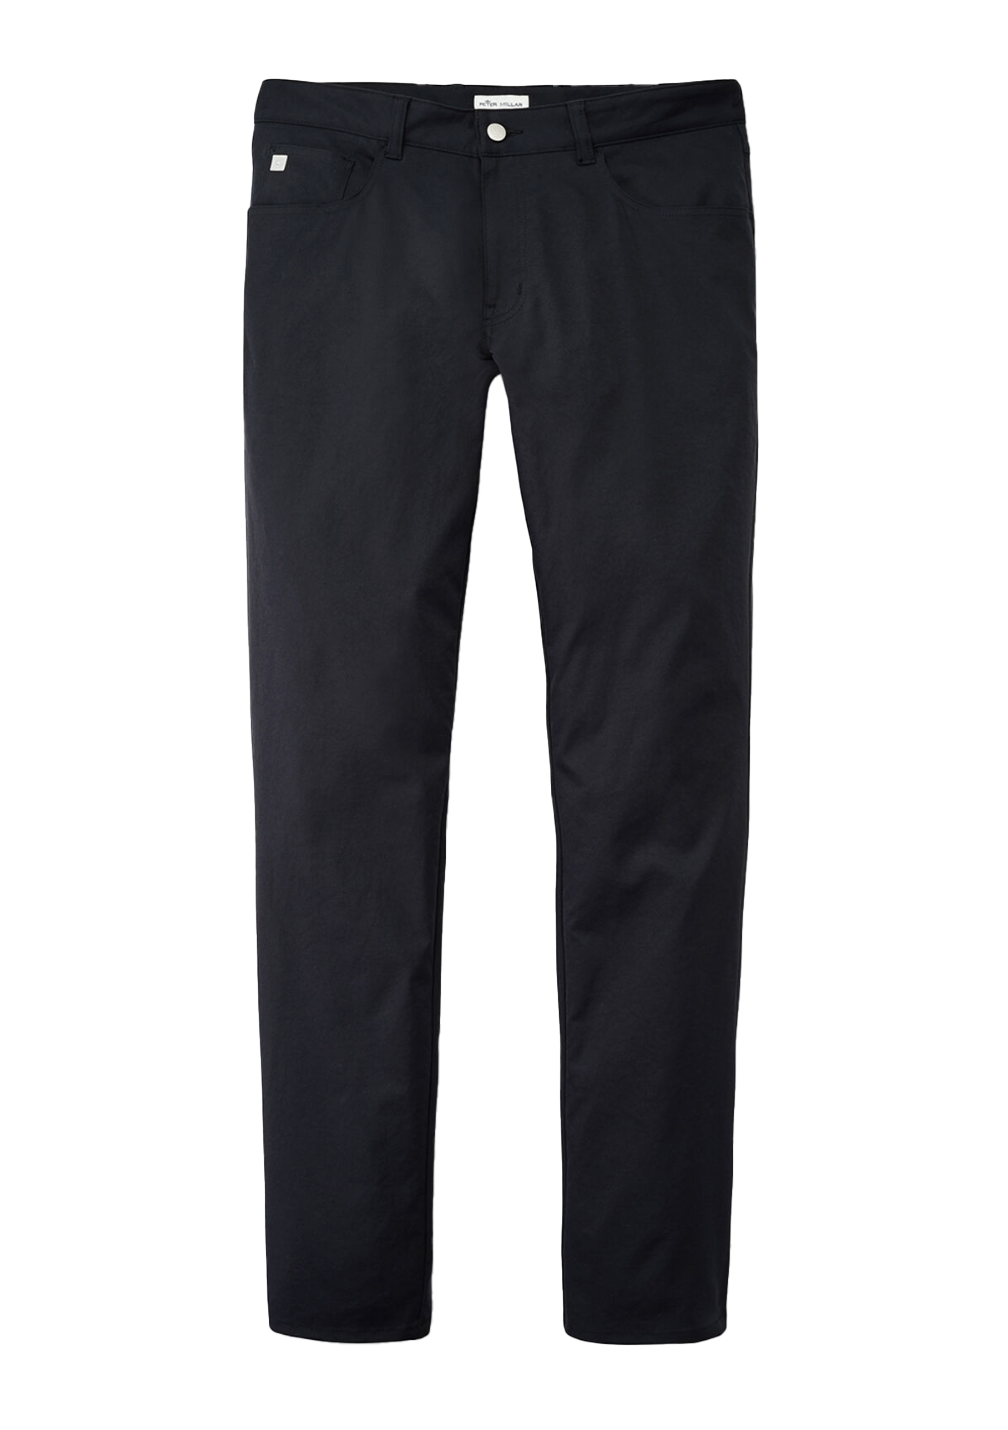 EB66 Performance 5-Pocket Pant Black